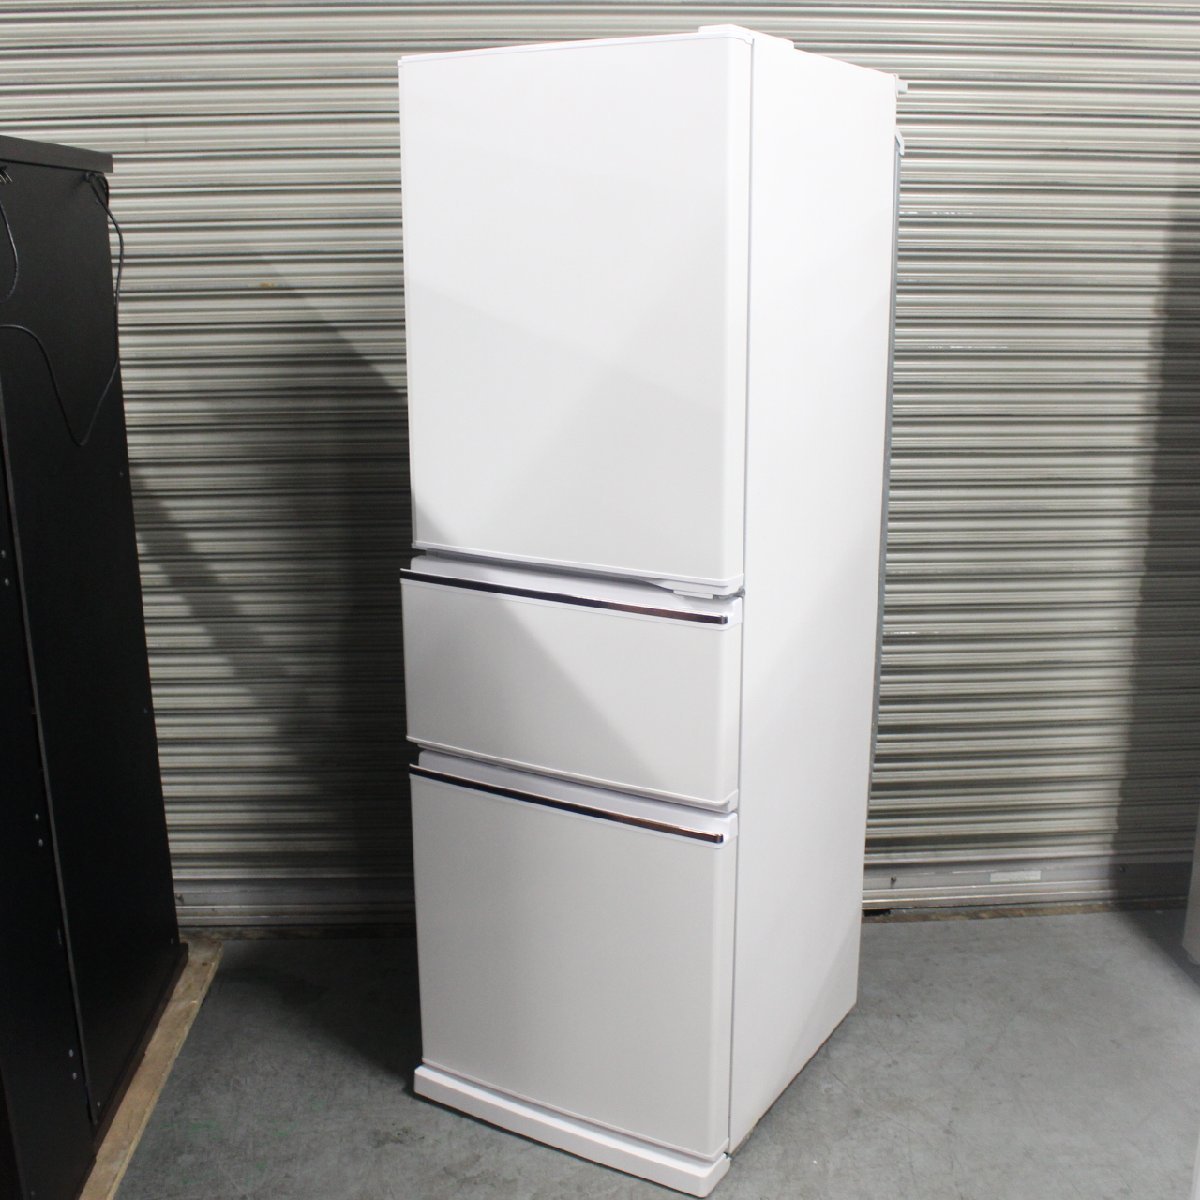 横浜市瀬谷区にて 三菱 冷蔵庫 MR-CX27D-W 2019年製 を出張買取させて頂きました。